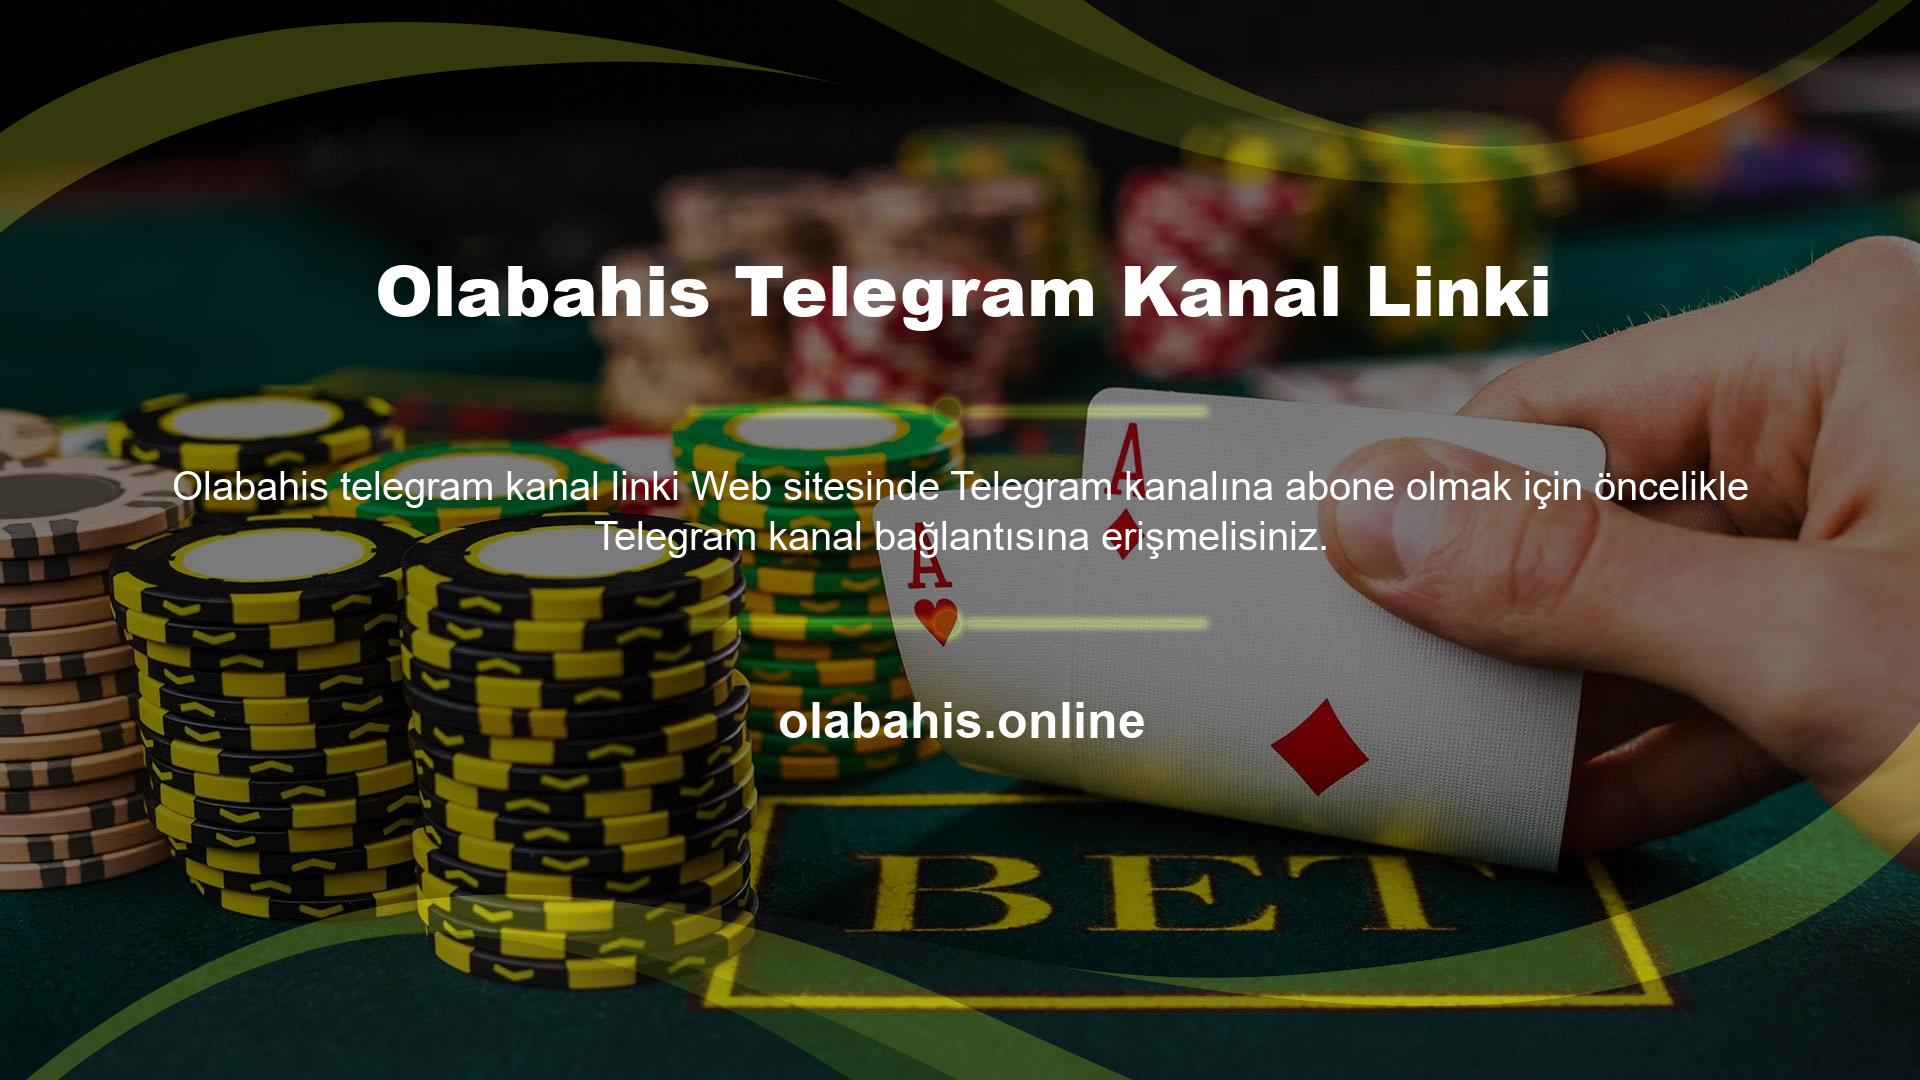 Web sitesinde Olabahis Telegram kanalına bir bağlantı mevcuttur